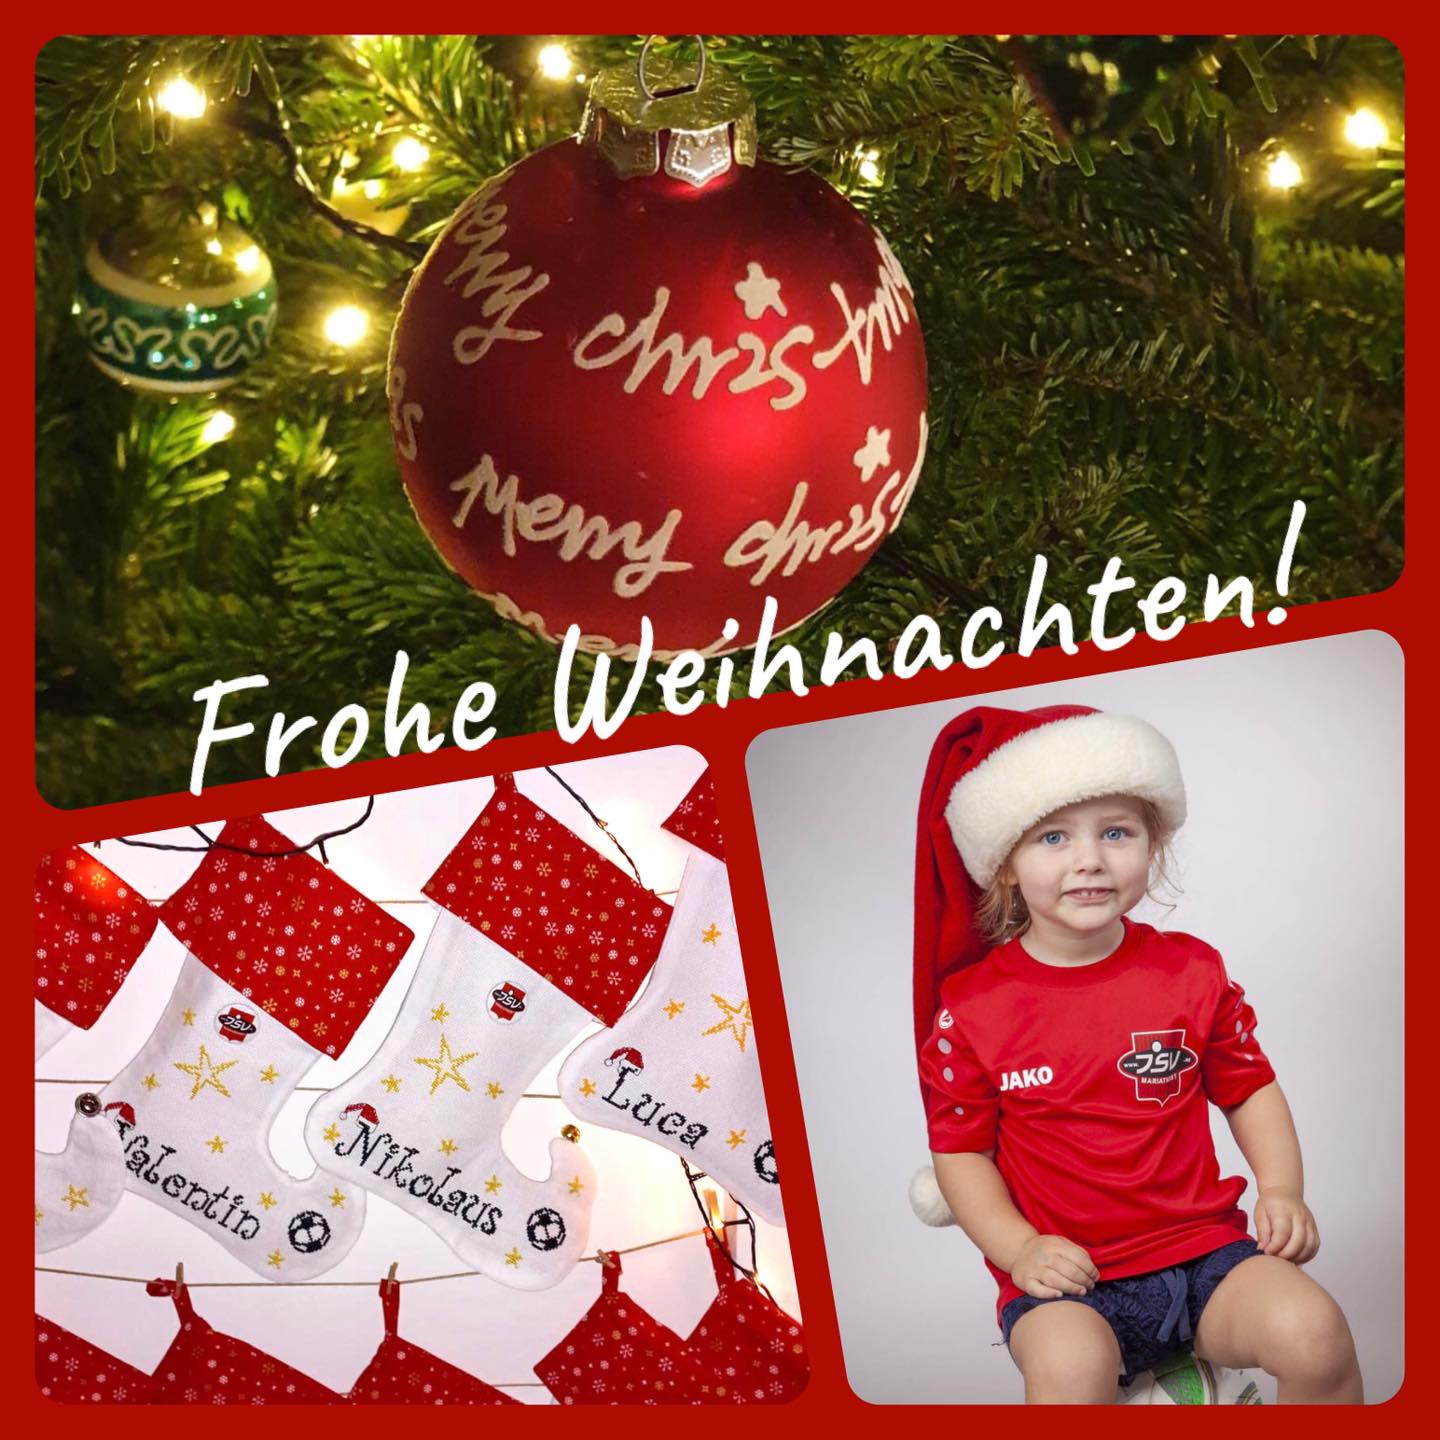 Featured Image for “Frohe Weihnachten wünscht der JSV”